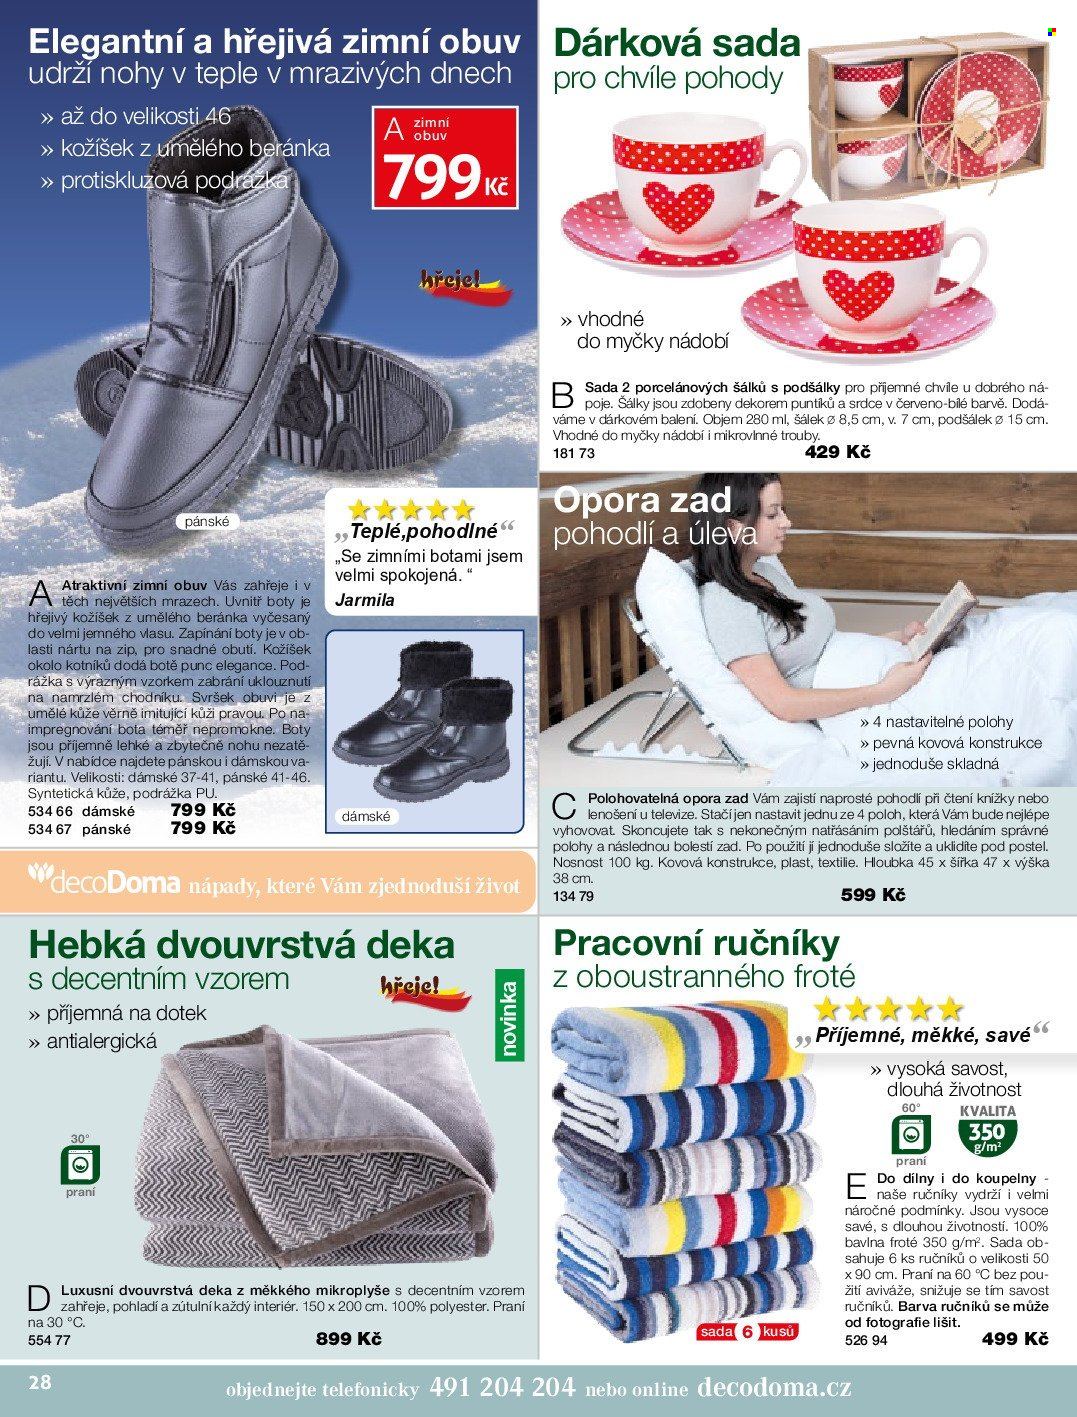 thumbnail - Leták decoDoma - Produkty v akci - dárková sada, šálek, ručník, deka, opora zad, zimní obuv, boty. Strana 28.